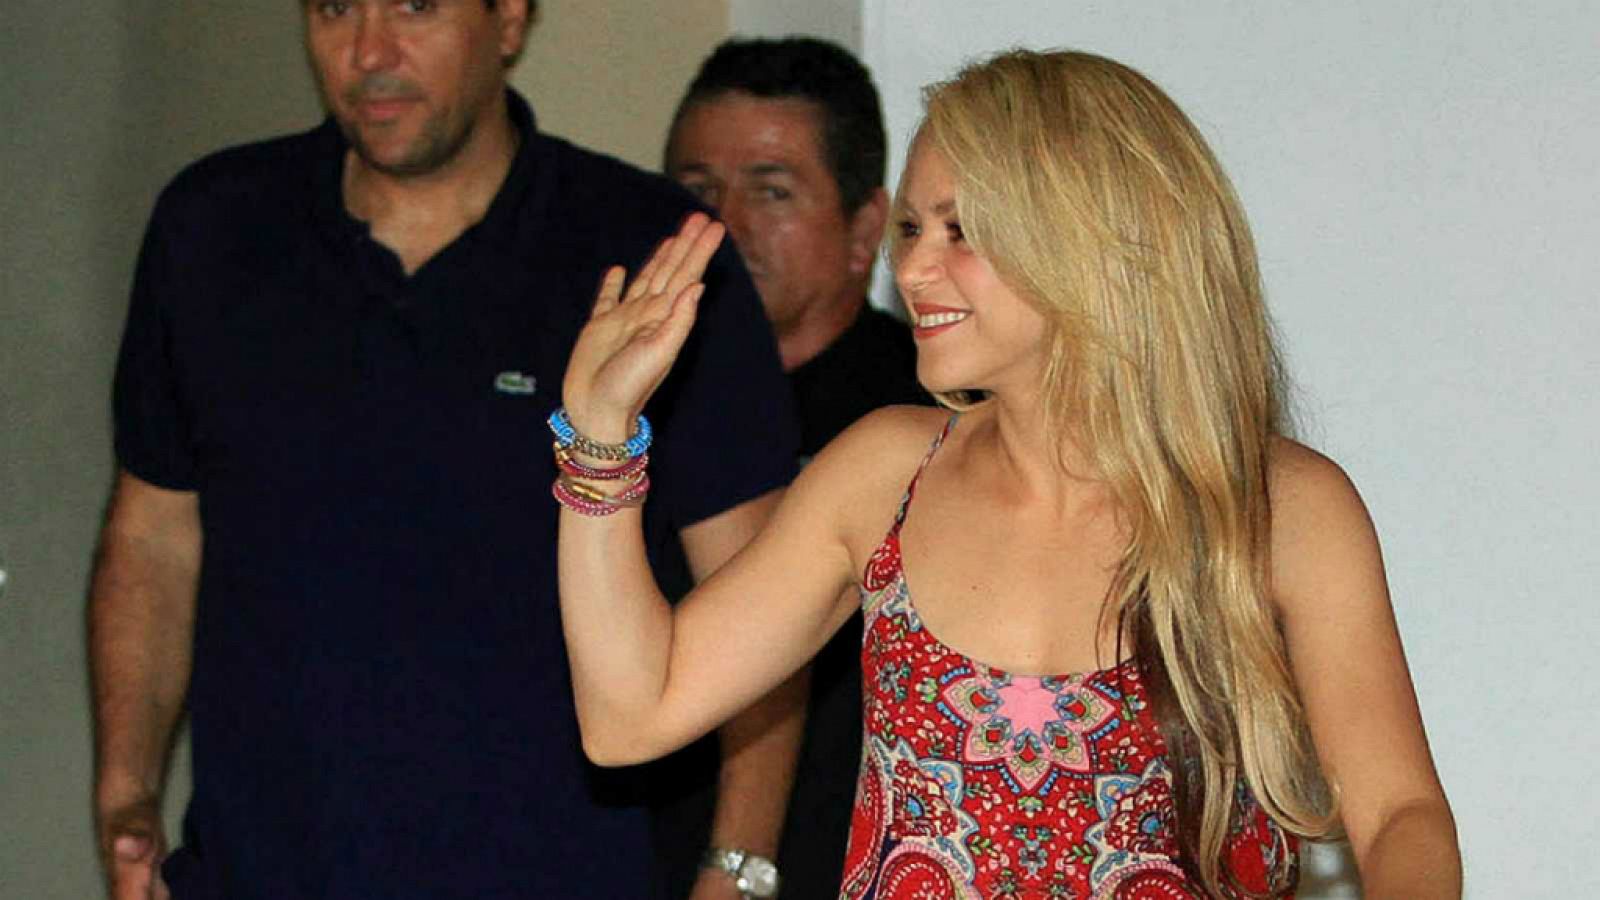 El juez desestima la demanda de plagio contra Shakira y Carlos Vives